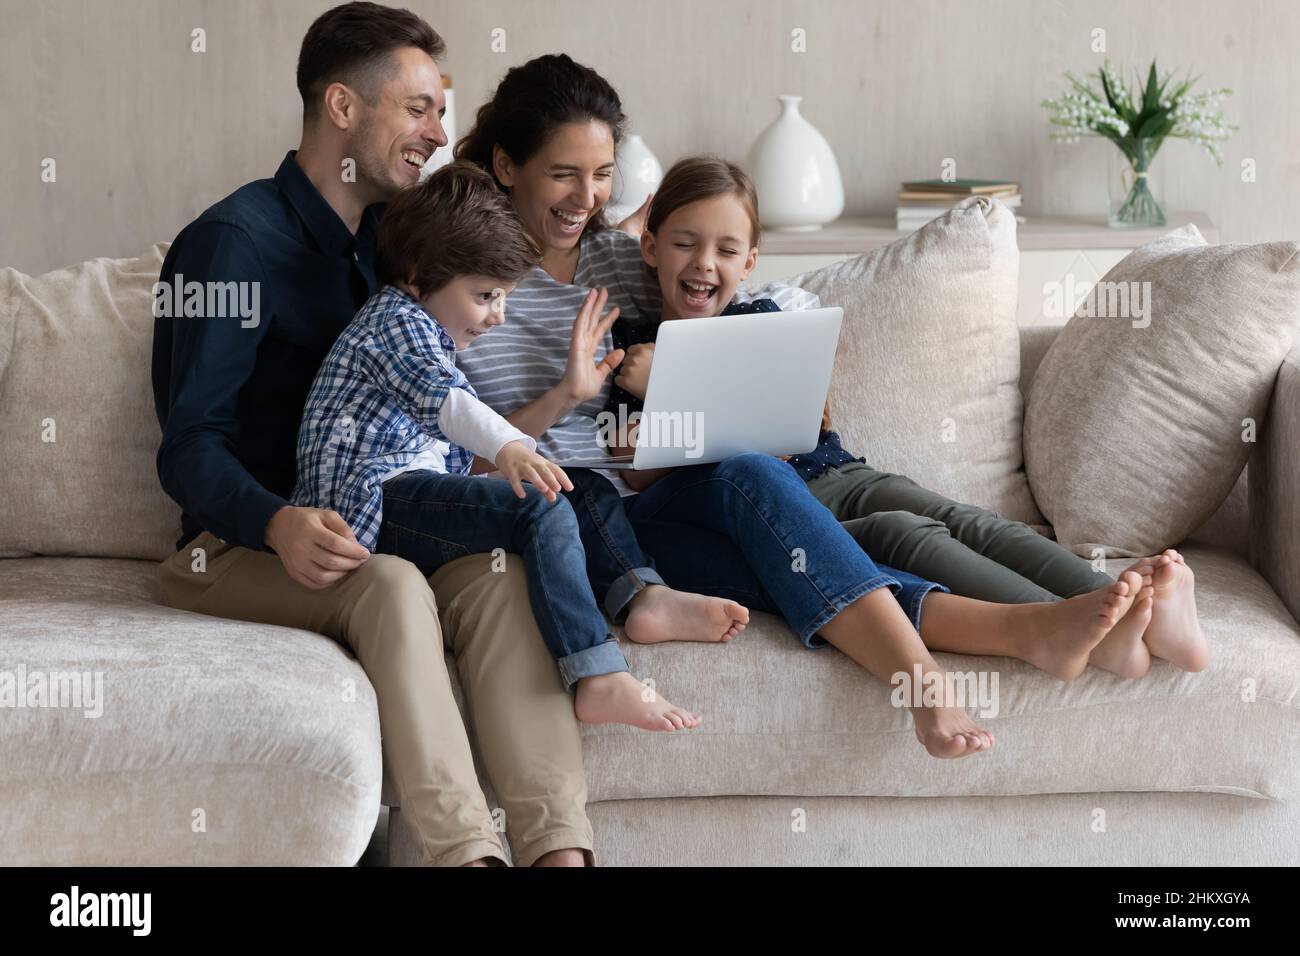 Glückliche Eltern mit zwei Kindern, die gemeinsam einen Videoanruf tätigen Stockfoto